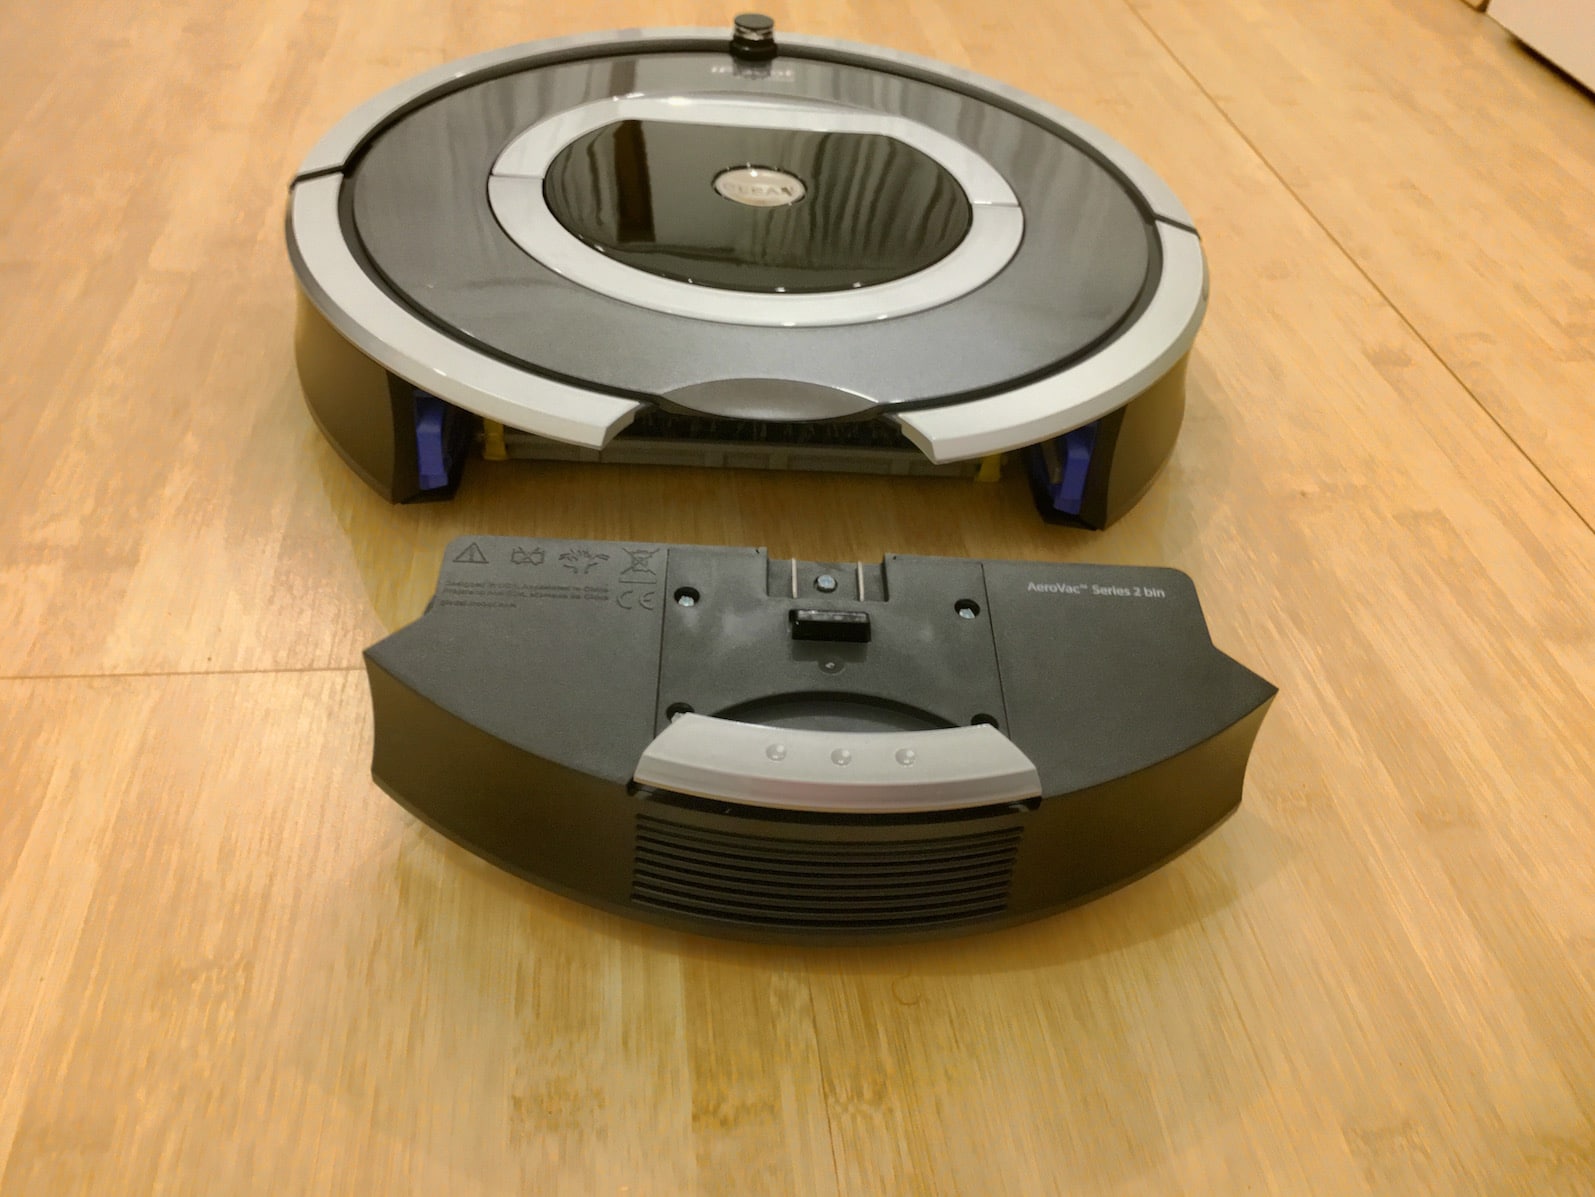 Irobot Roomba 782 Getestet Saugroboter Erfahrungsbericht